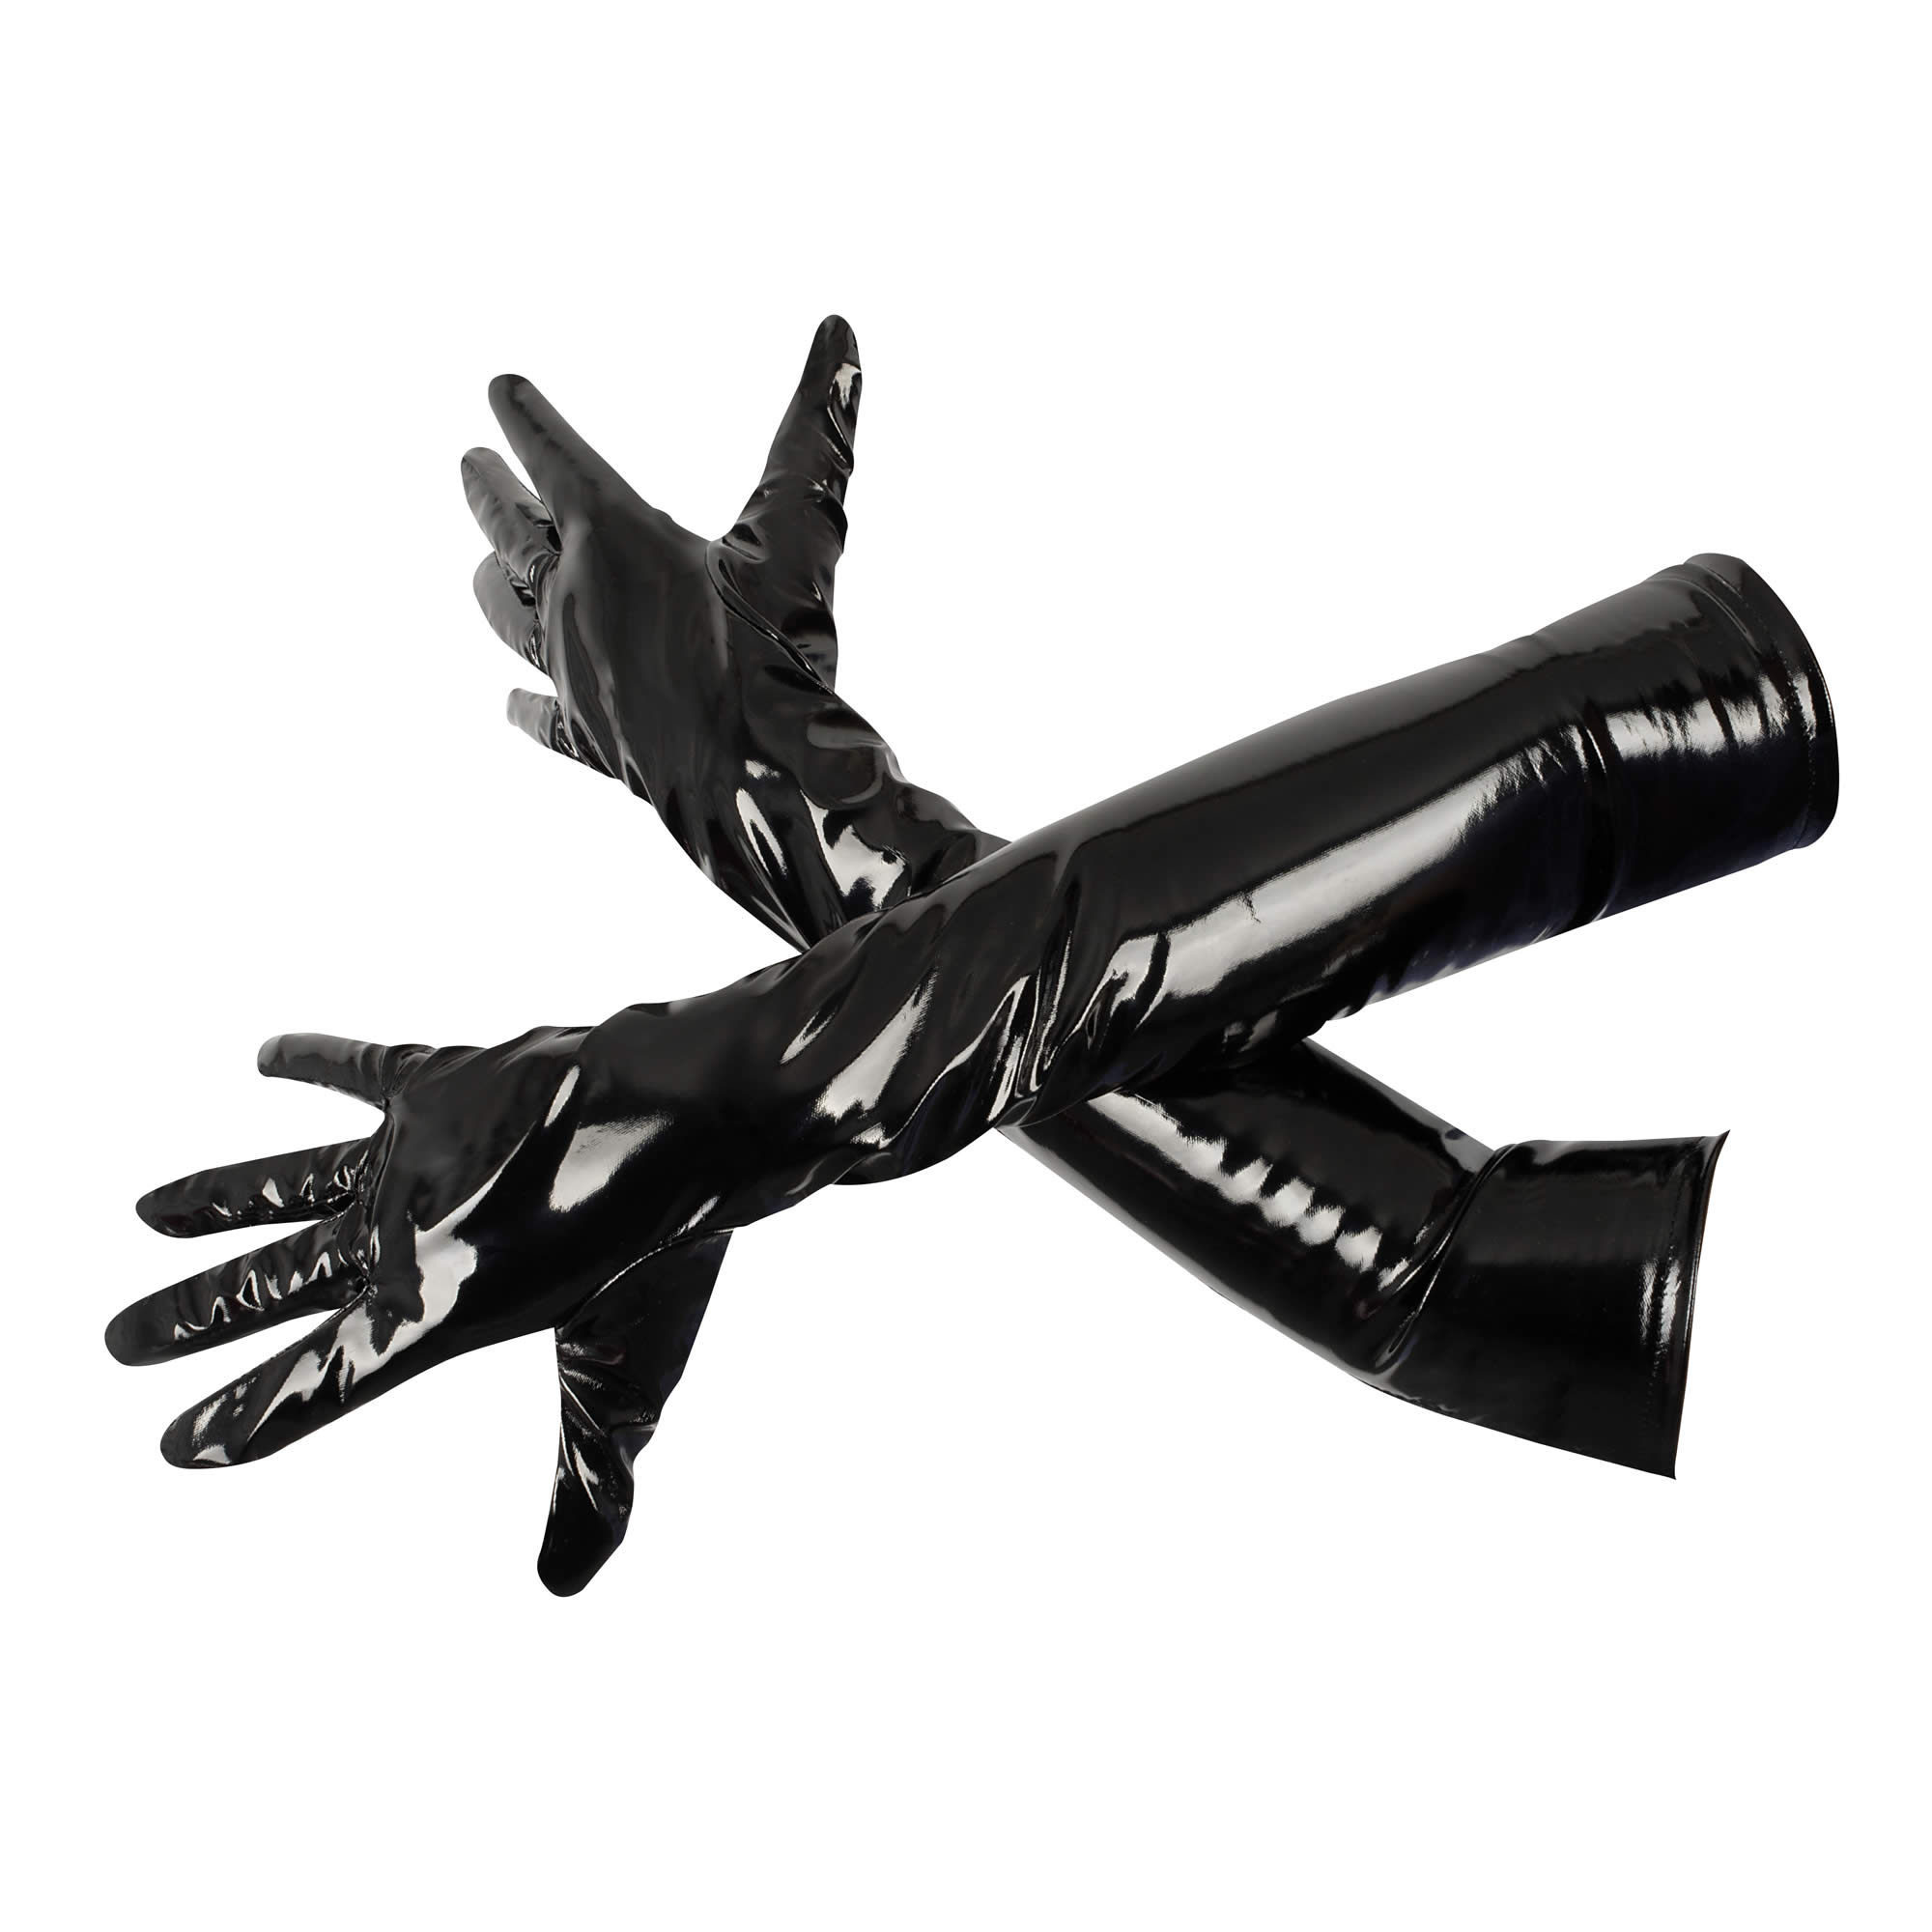 Vinyl Gloves in Black